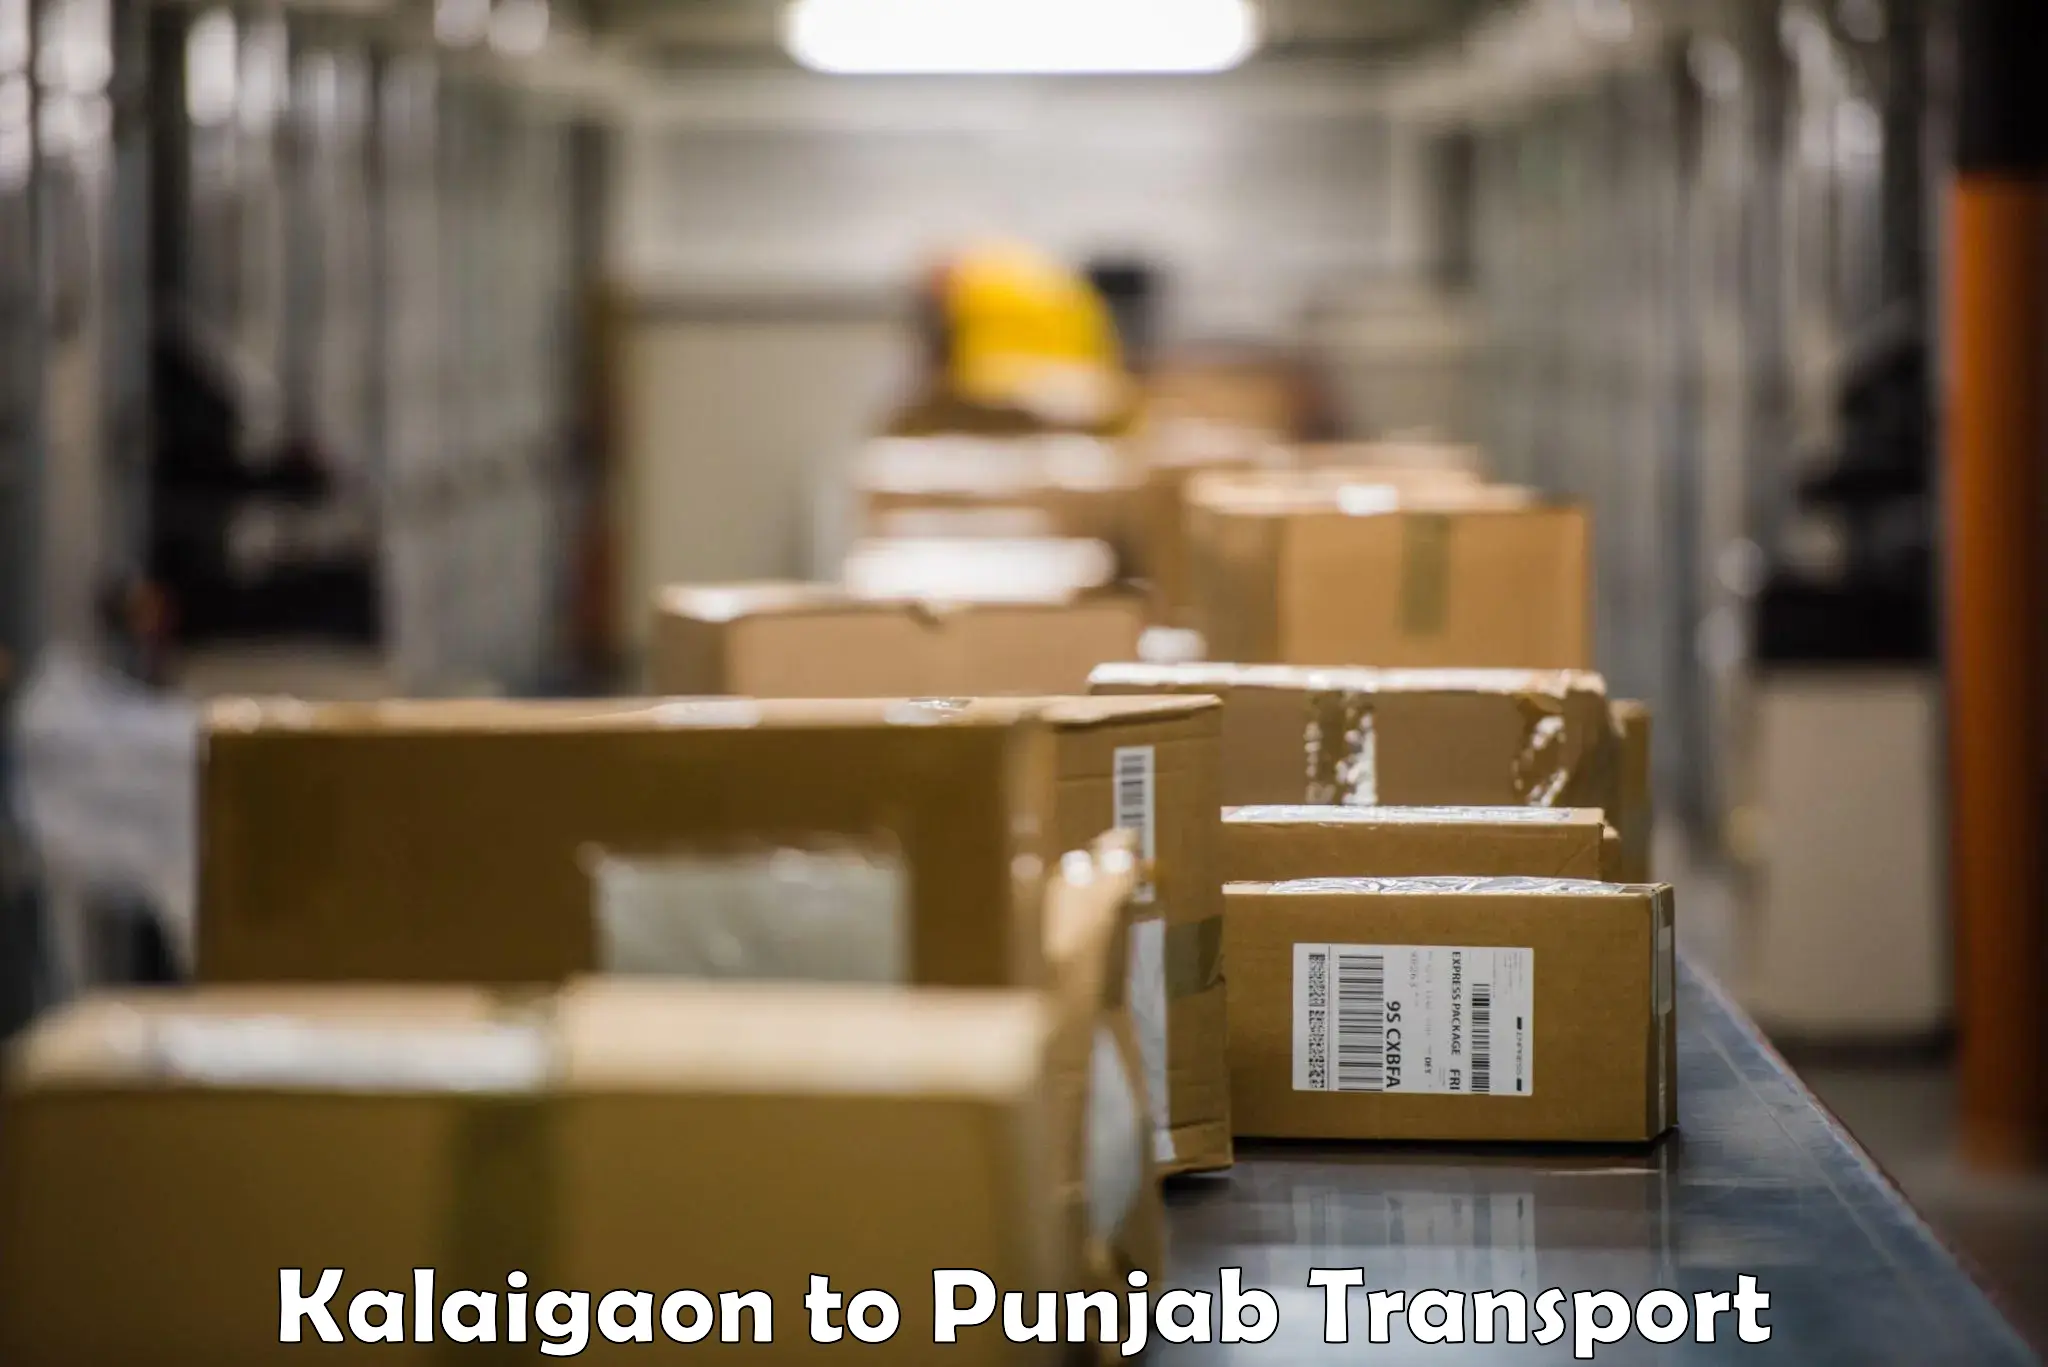 Express transport services Kalaigaon to Amritsar